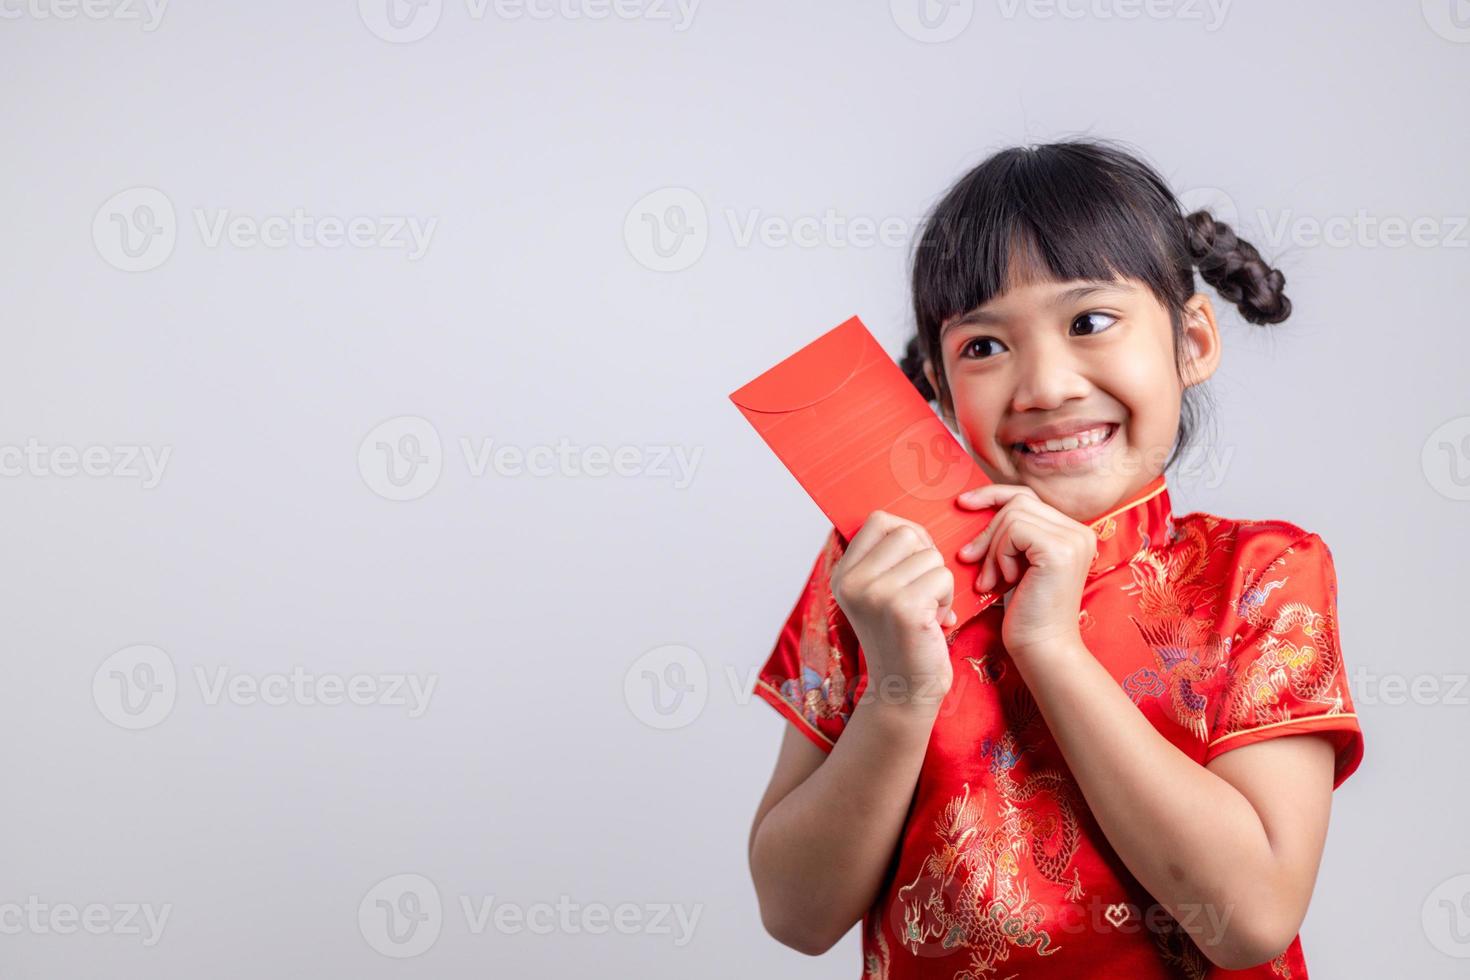 feliz Año Nuevo Chino. niñas asiáticas sonrientes que sostienen el sobre rojo foto